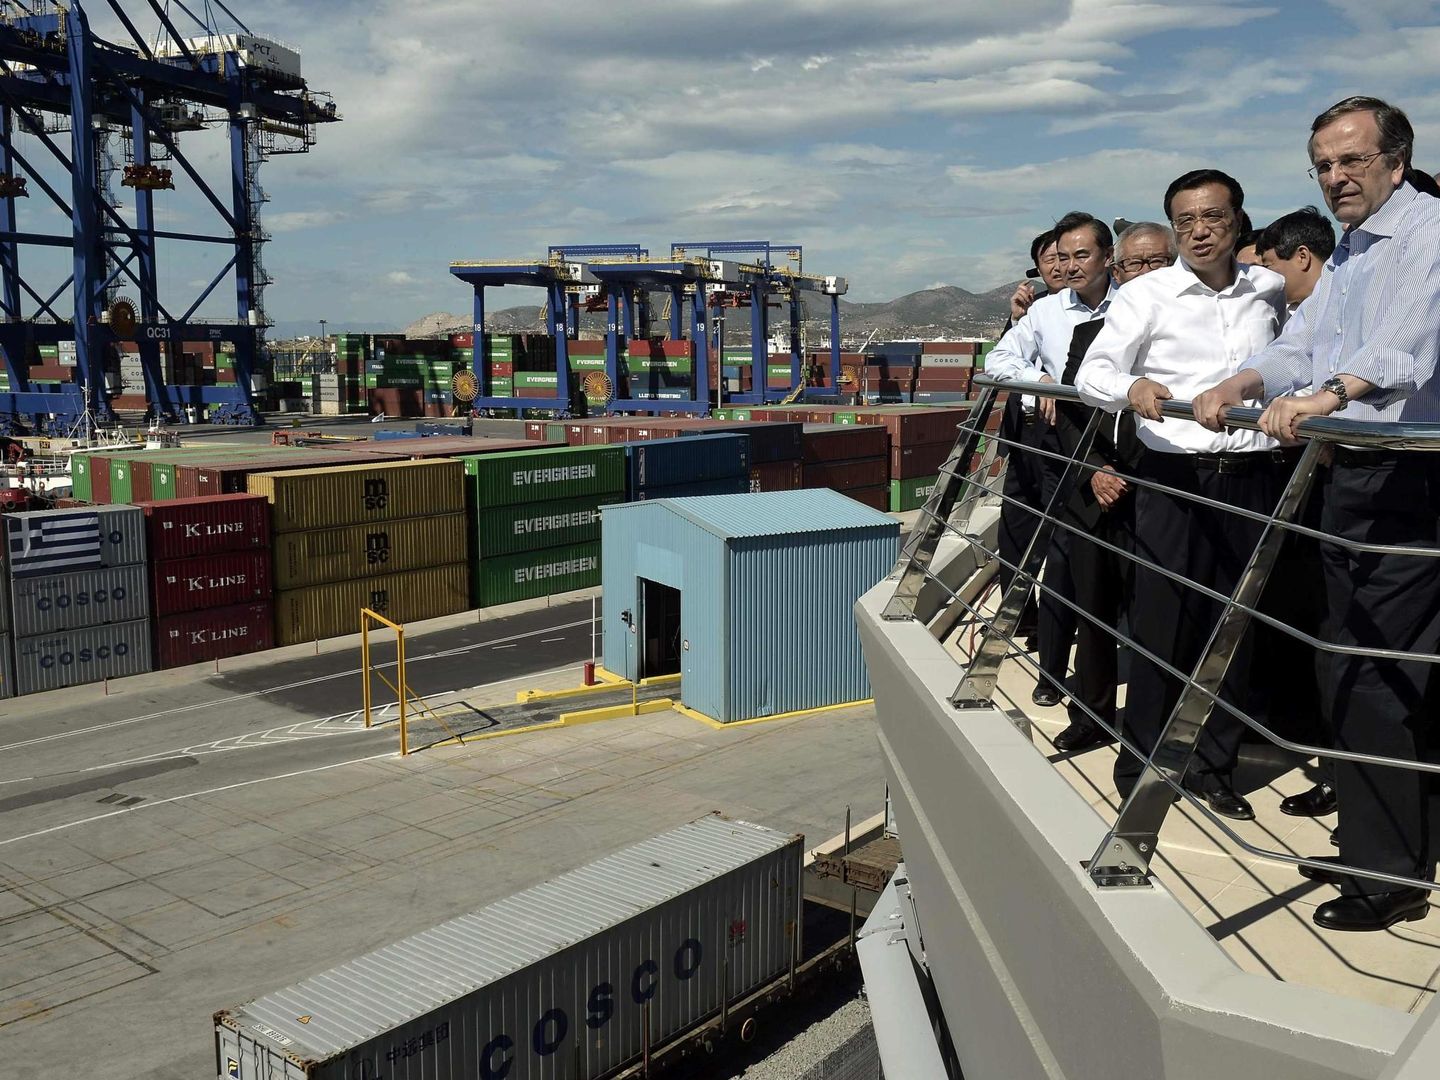 El primer ministro griego Antonis Samaras y el premier chino Li Keqiang en el puerto del Pireo, dos de cuyas tres terminales son propiedad de una empresa china, en 2014. (Reuters)